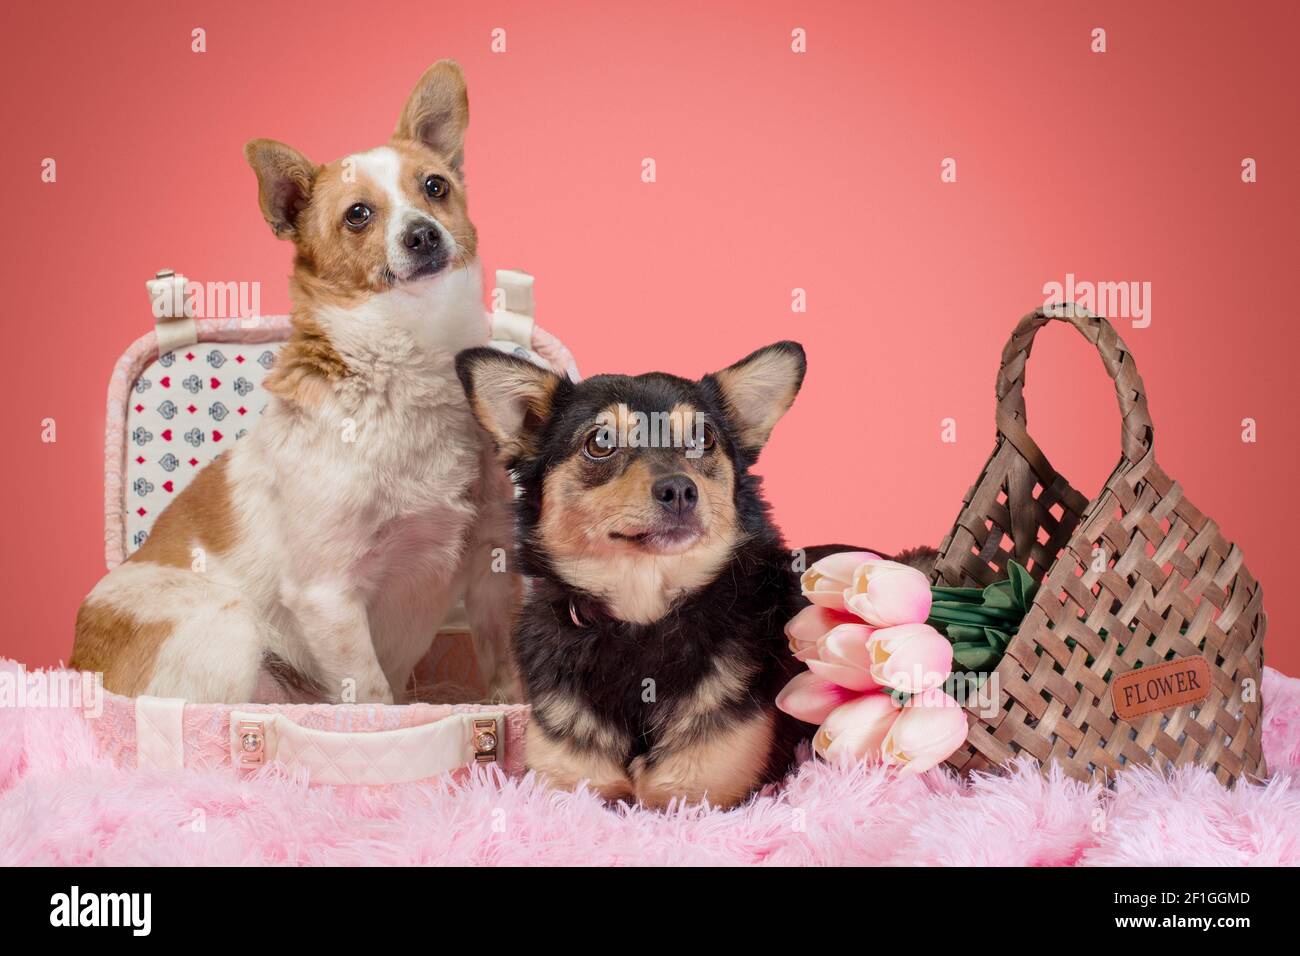 deux chiens adultes en fourrure rose avec une valise décorative et tulipes dans un panier en osier Banque D'Images